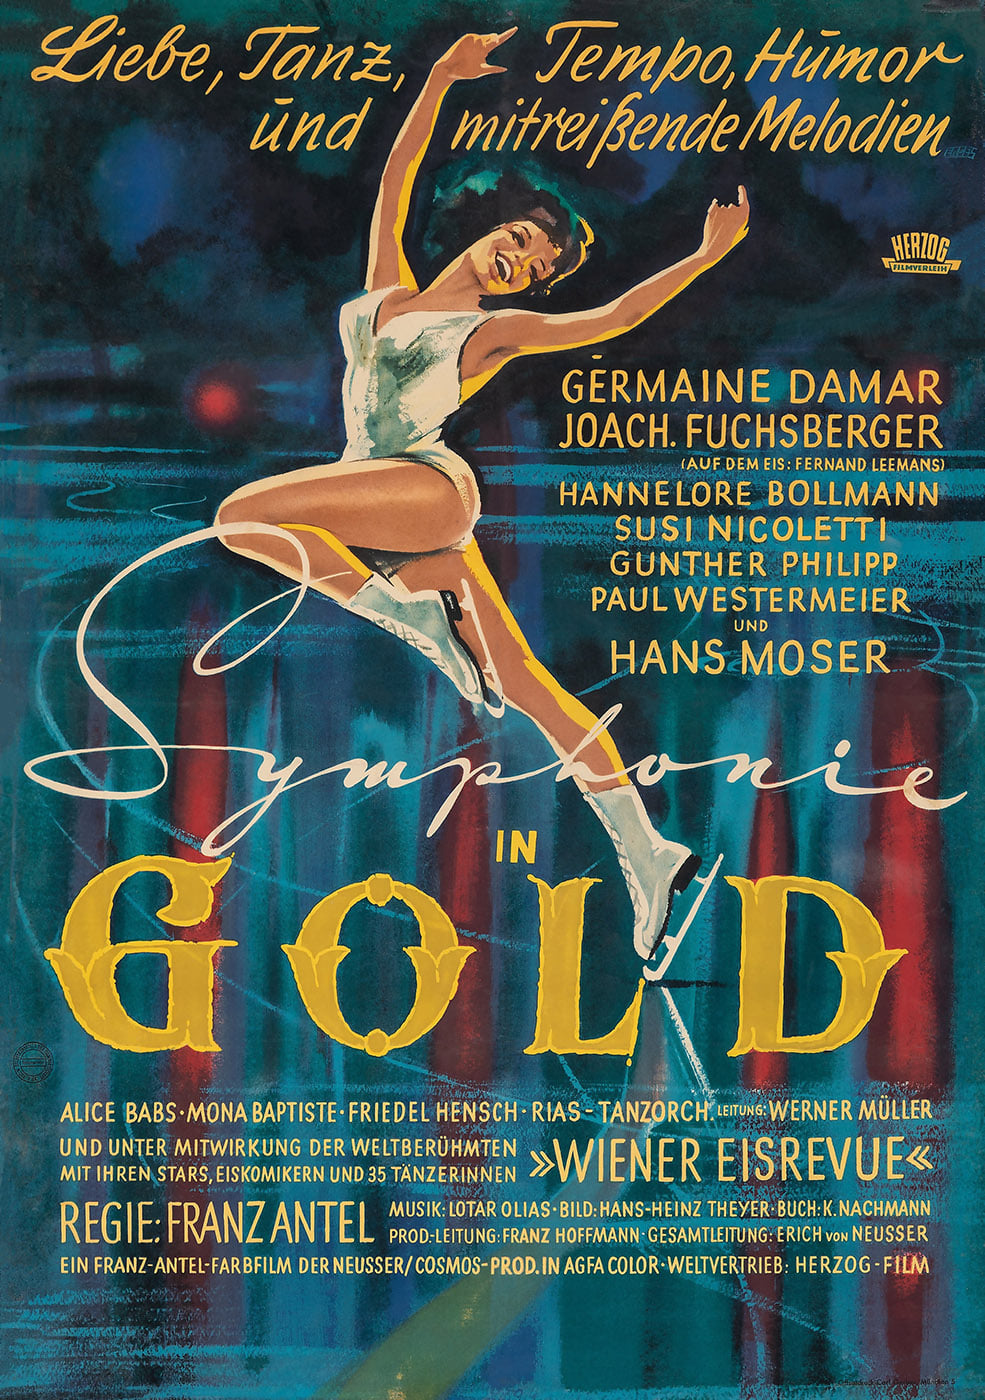 Symphonie in Gold (1956)